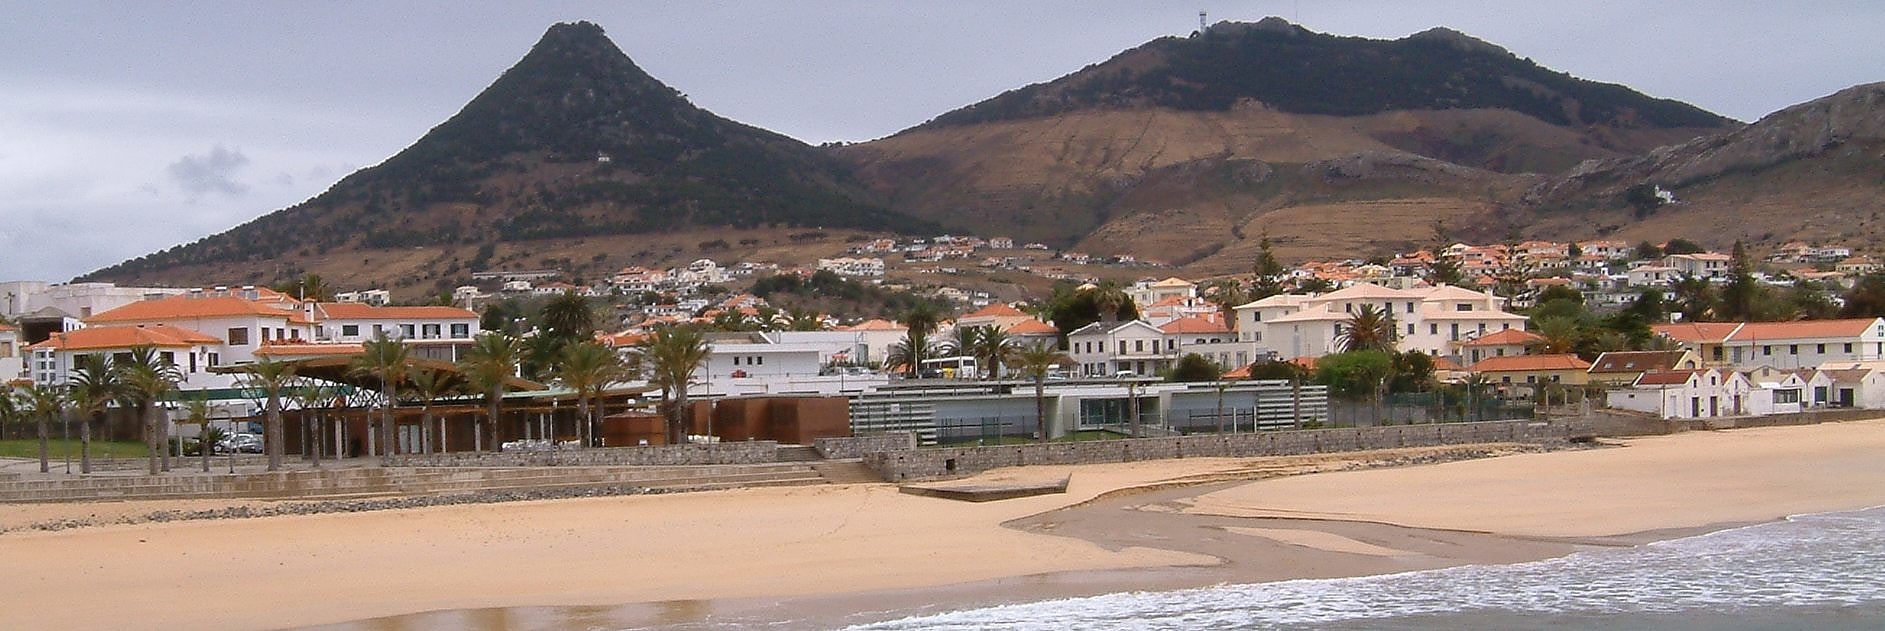 Porto Santo, Portugal